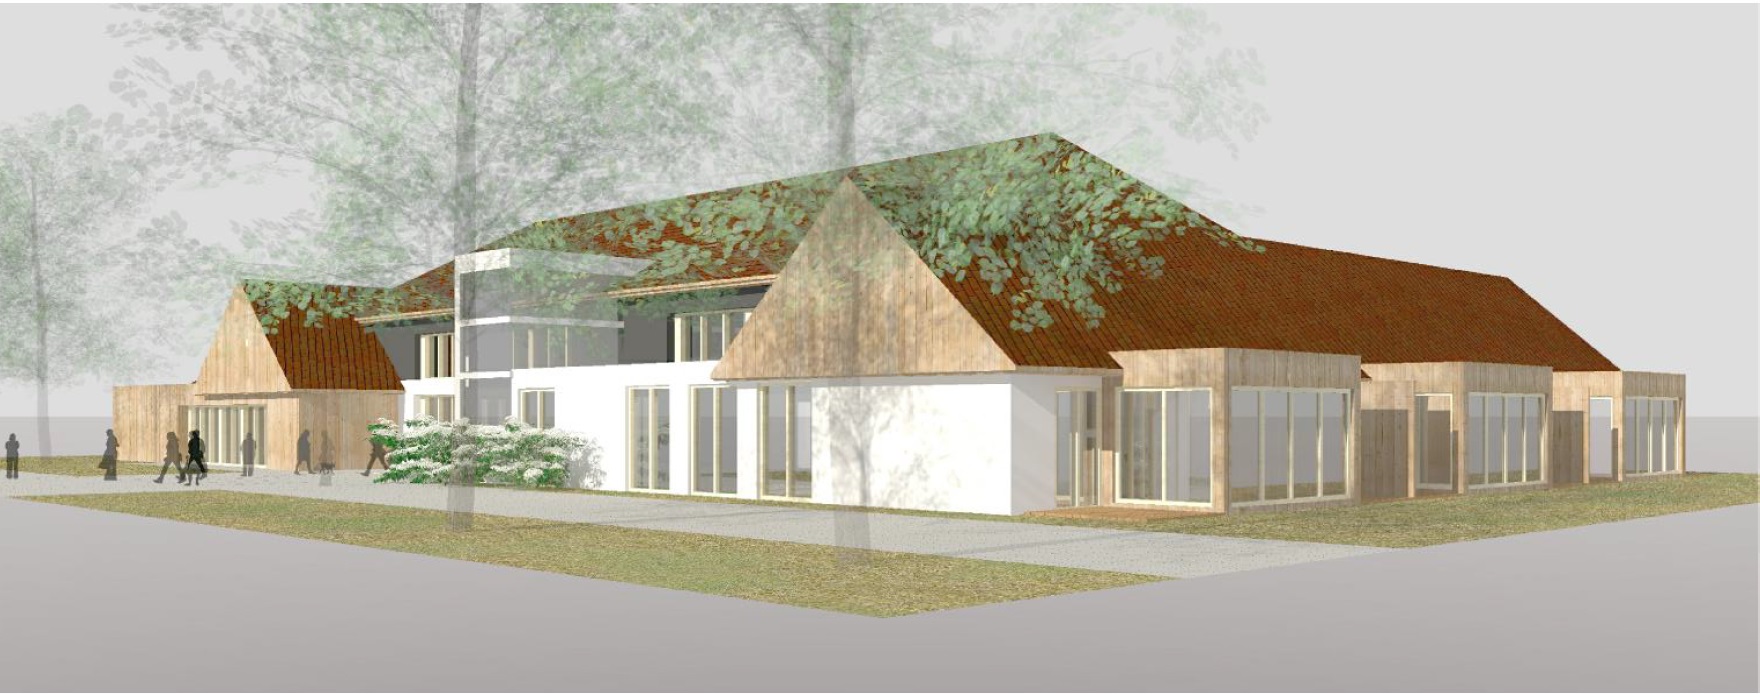 vizualizace jendopatrového moderního domu s dřevěným obložením, bílým nátěrem a velkými prosklenými okny